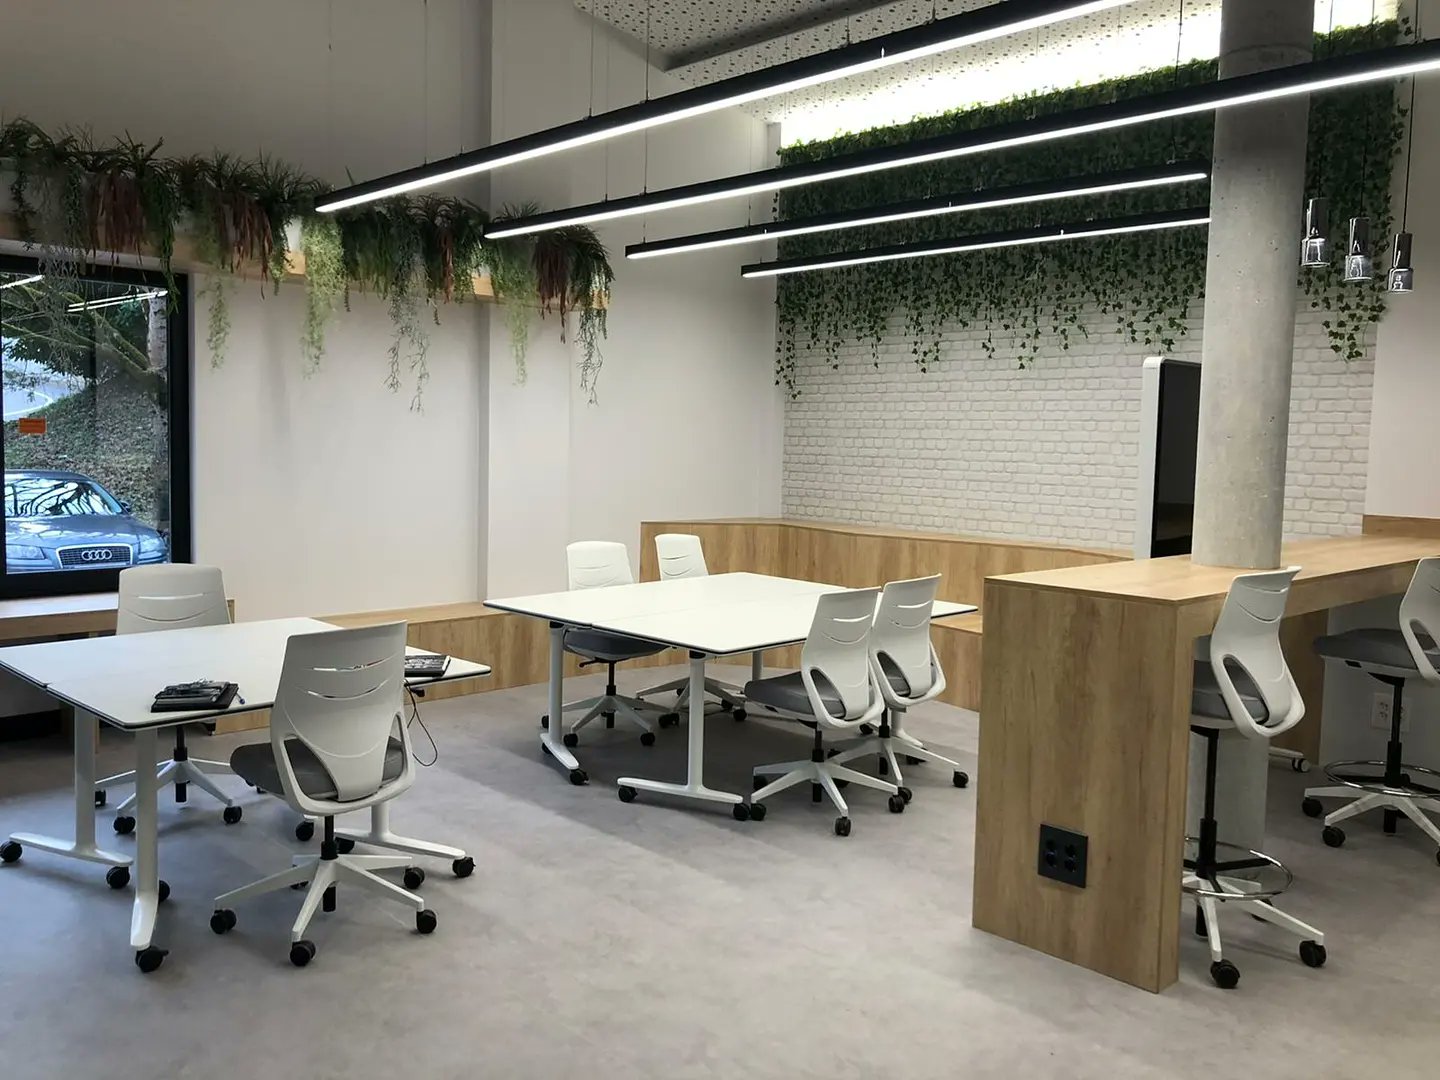 Inaugurado el nuevo espacio para la generación de proyectos empresariales, ubicado en las inmediaciones de Debegesa